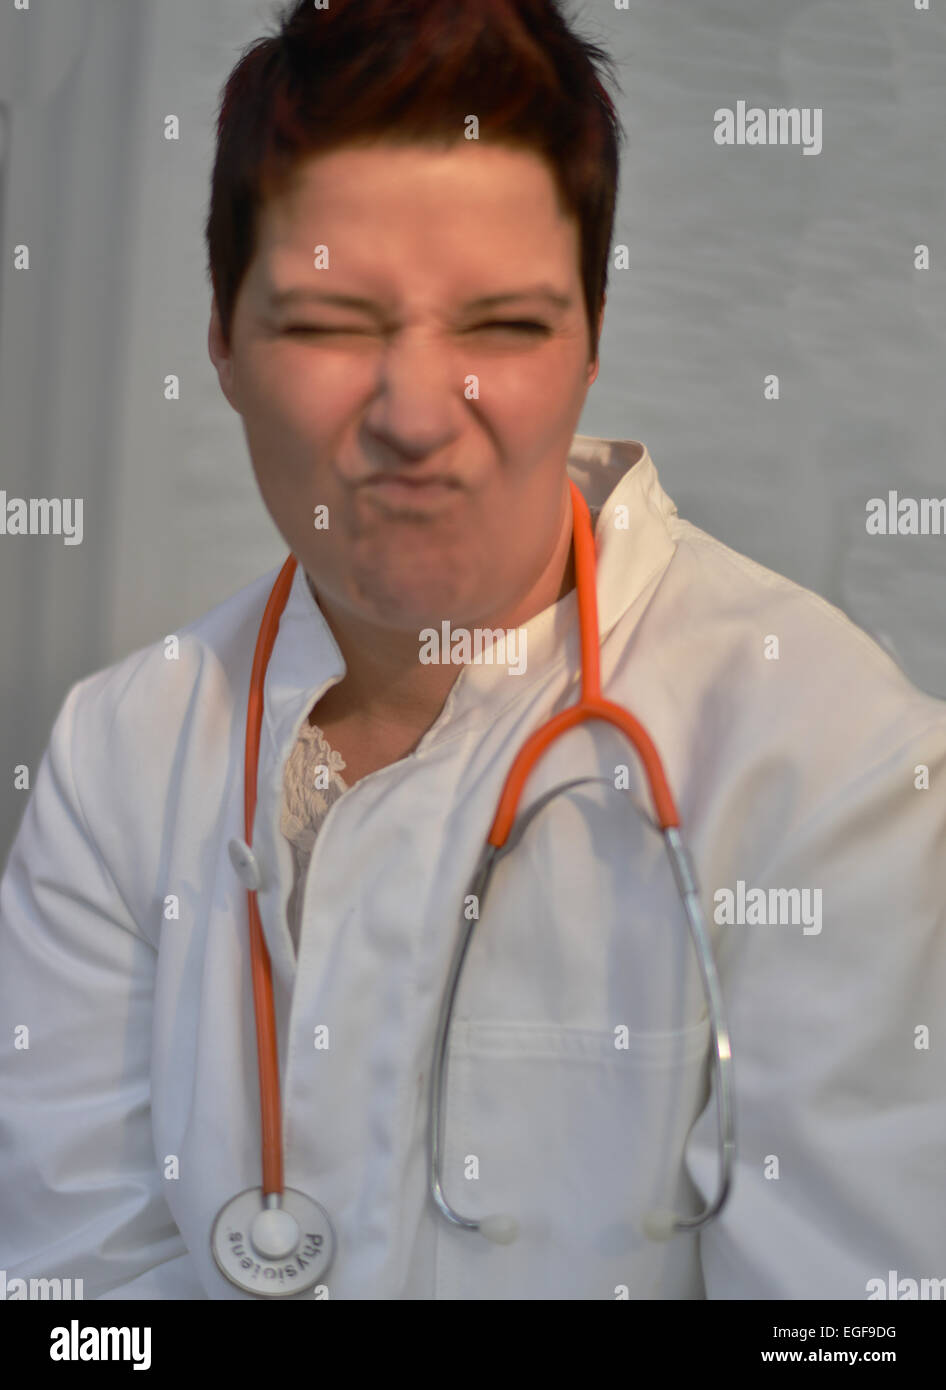 Ein Arzt in einem weißen Kittel und Stethoskop mit Mimik. Aufgenommen am 11.03.2014 in Iserlohn. Stockfoto